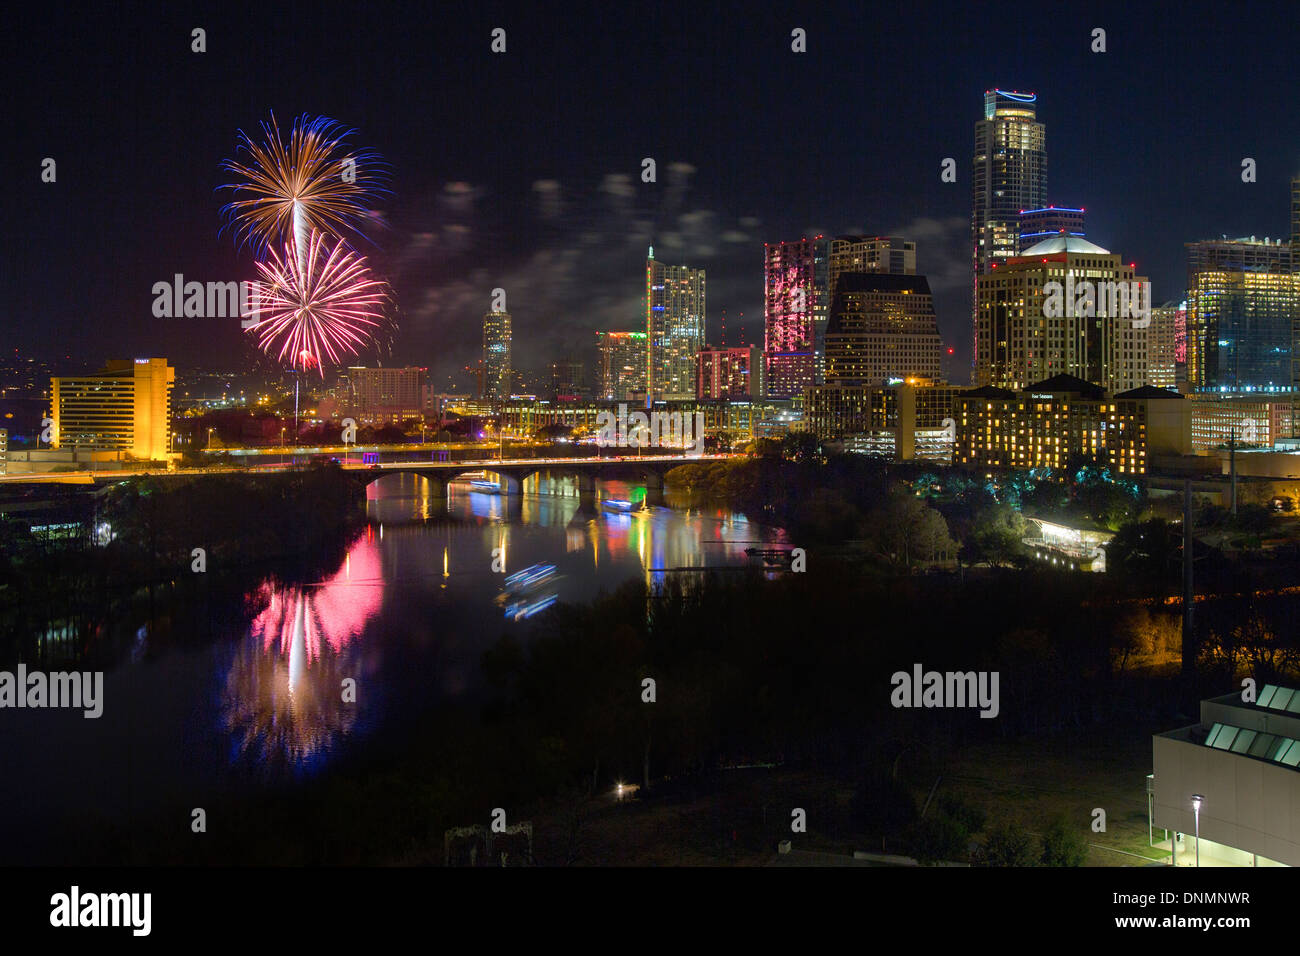 Feuerwerk explodieren über der Skyline von Austin, Texas am Vorabend des neuen Jahres wie Nachtschwärmer auf Wiedersehen bis 2013 und 2014 Hallo sagen. Stockfoto